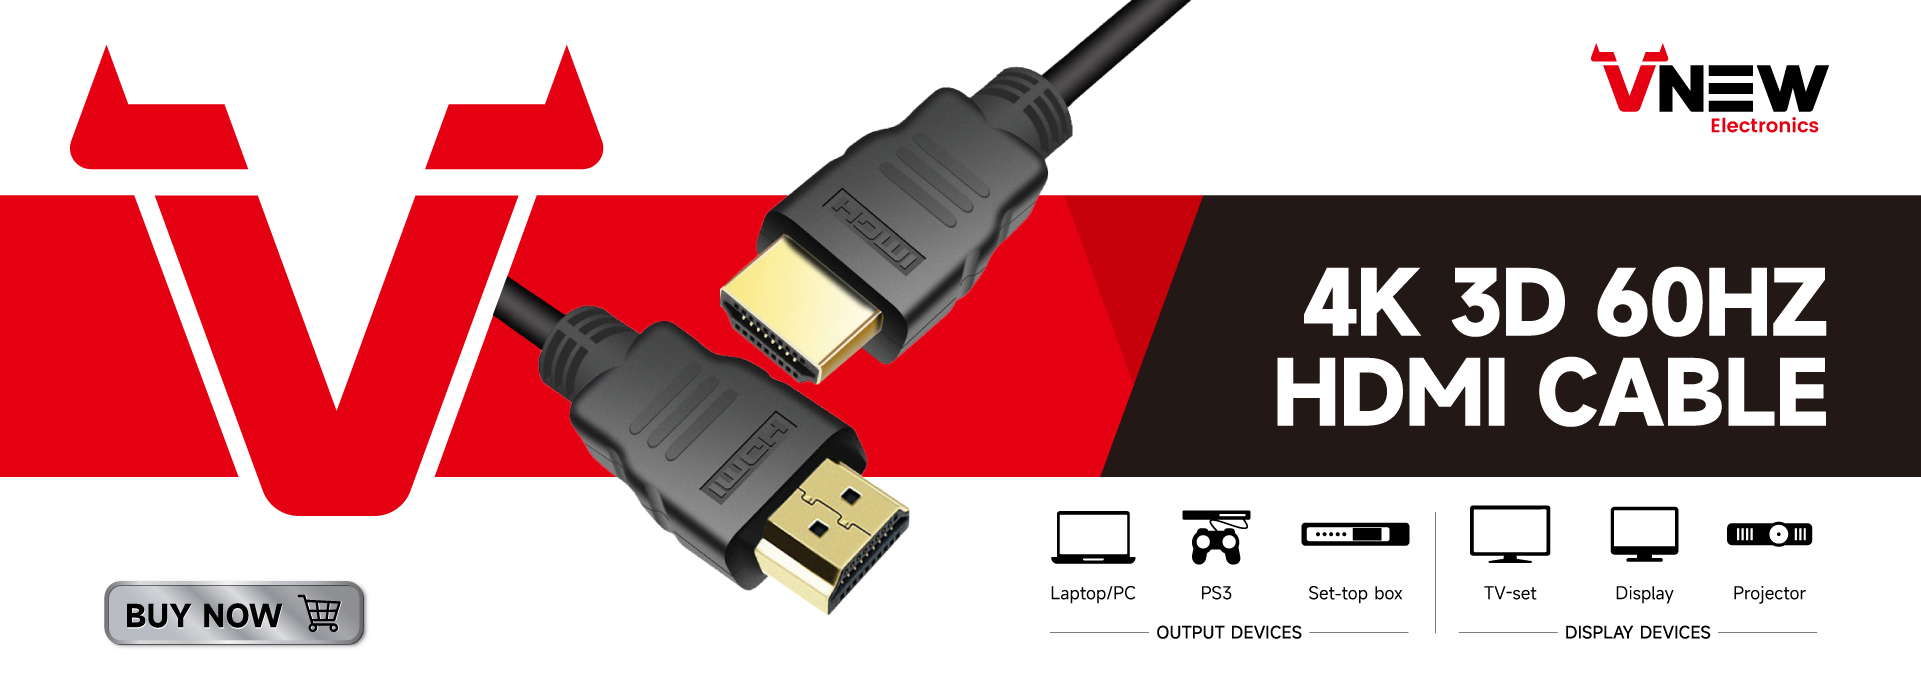 VN-HDP01 VNew सानुकूलित लांबीचा डिस्प्लेपोर्ट ते HDMI केबल 4K 60Hz DP